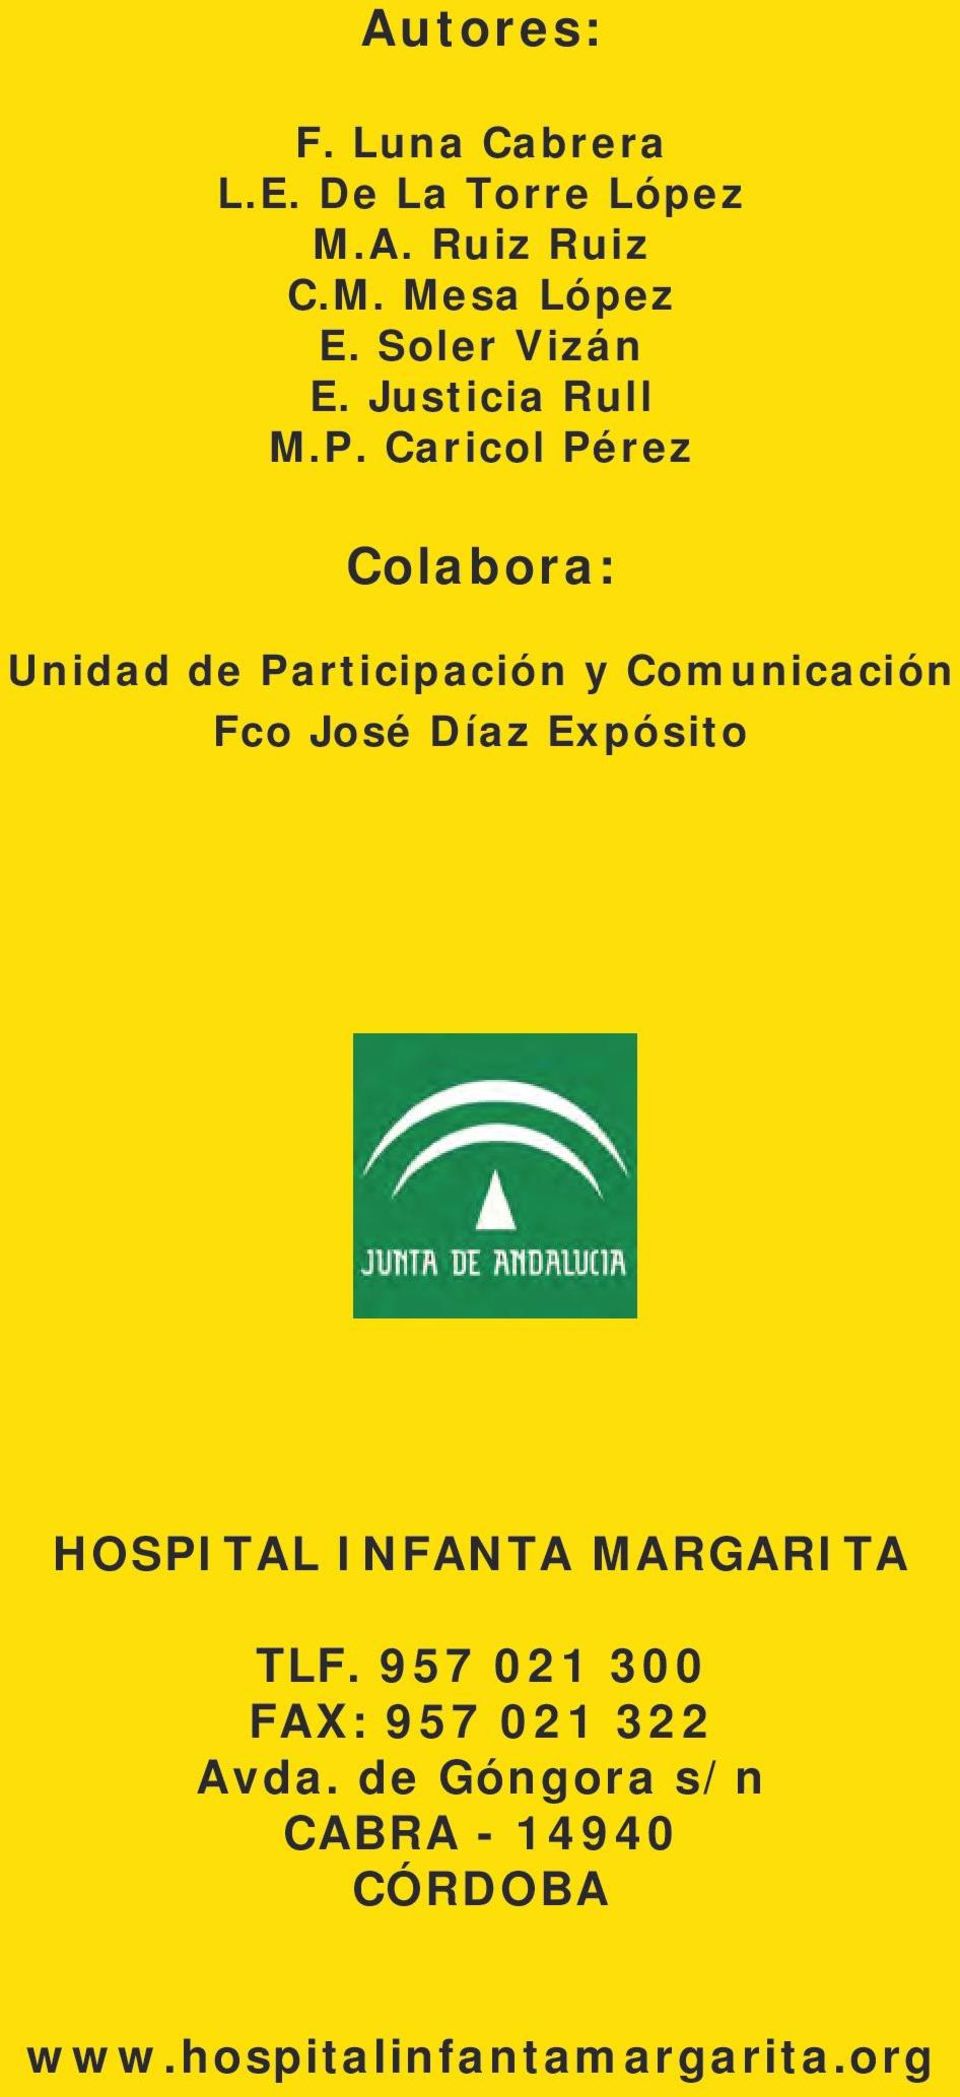 Caricol Pérez Colabora: Unidad de Participación y Comunicación Fco José Díaz